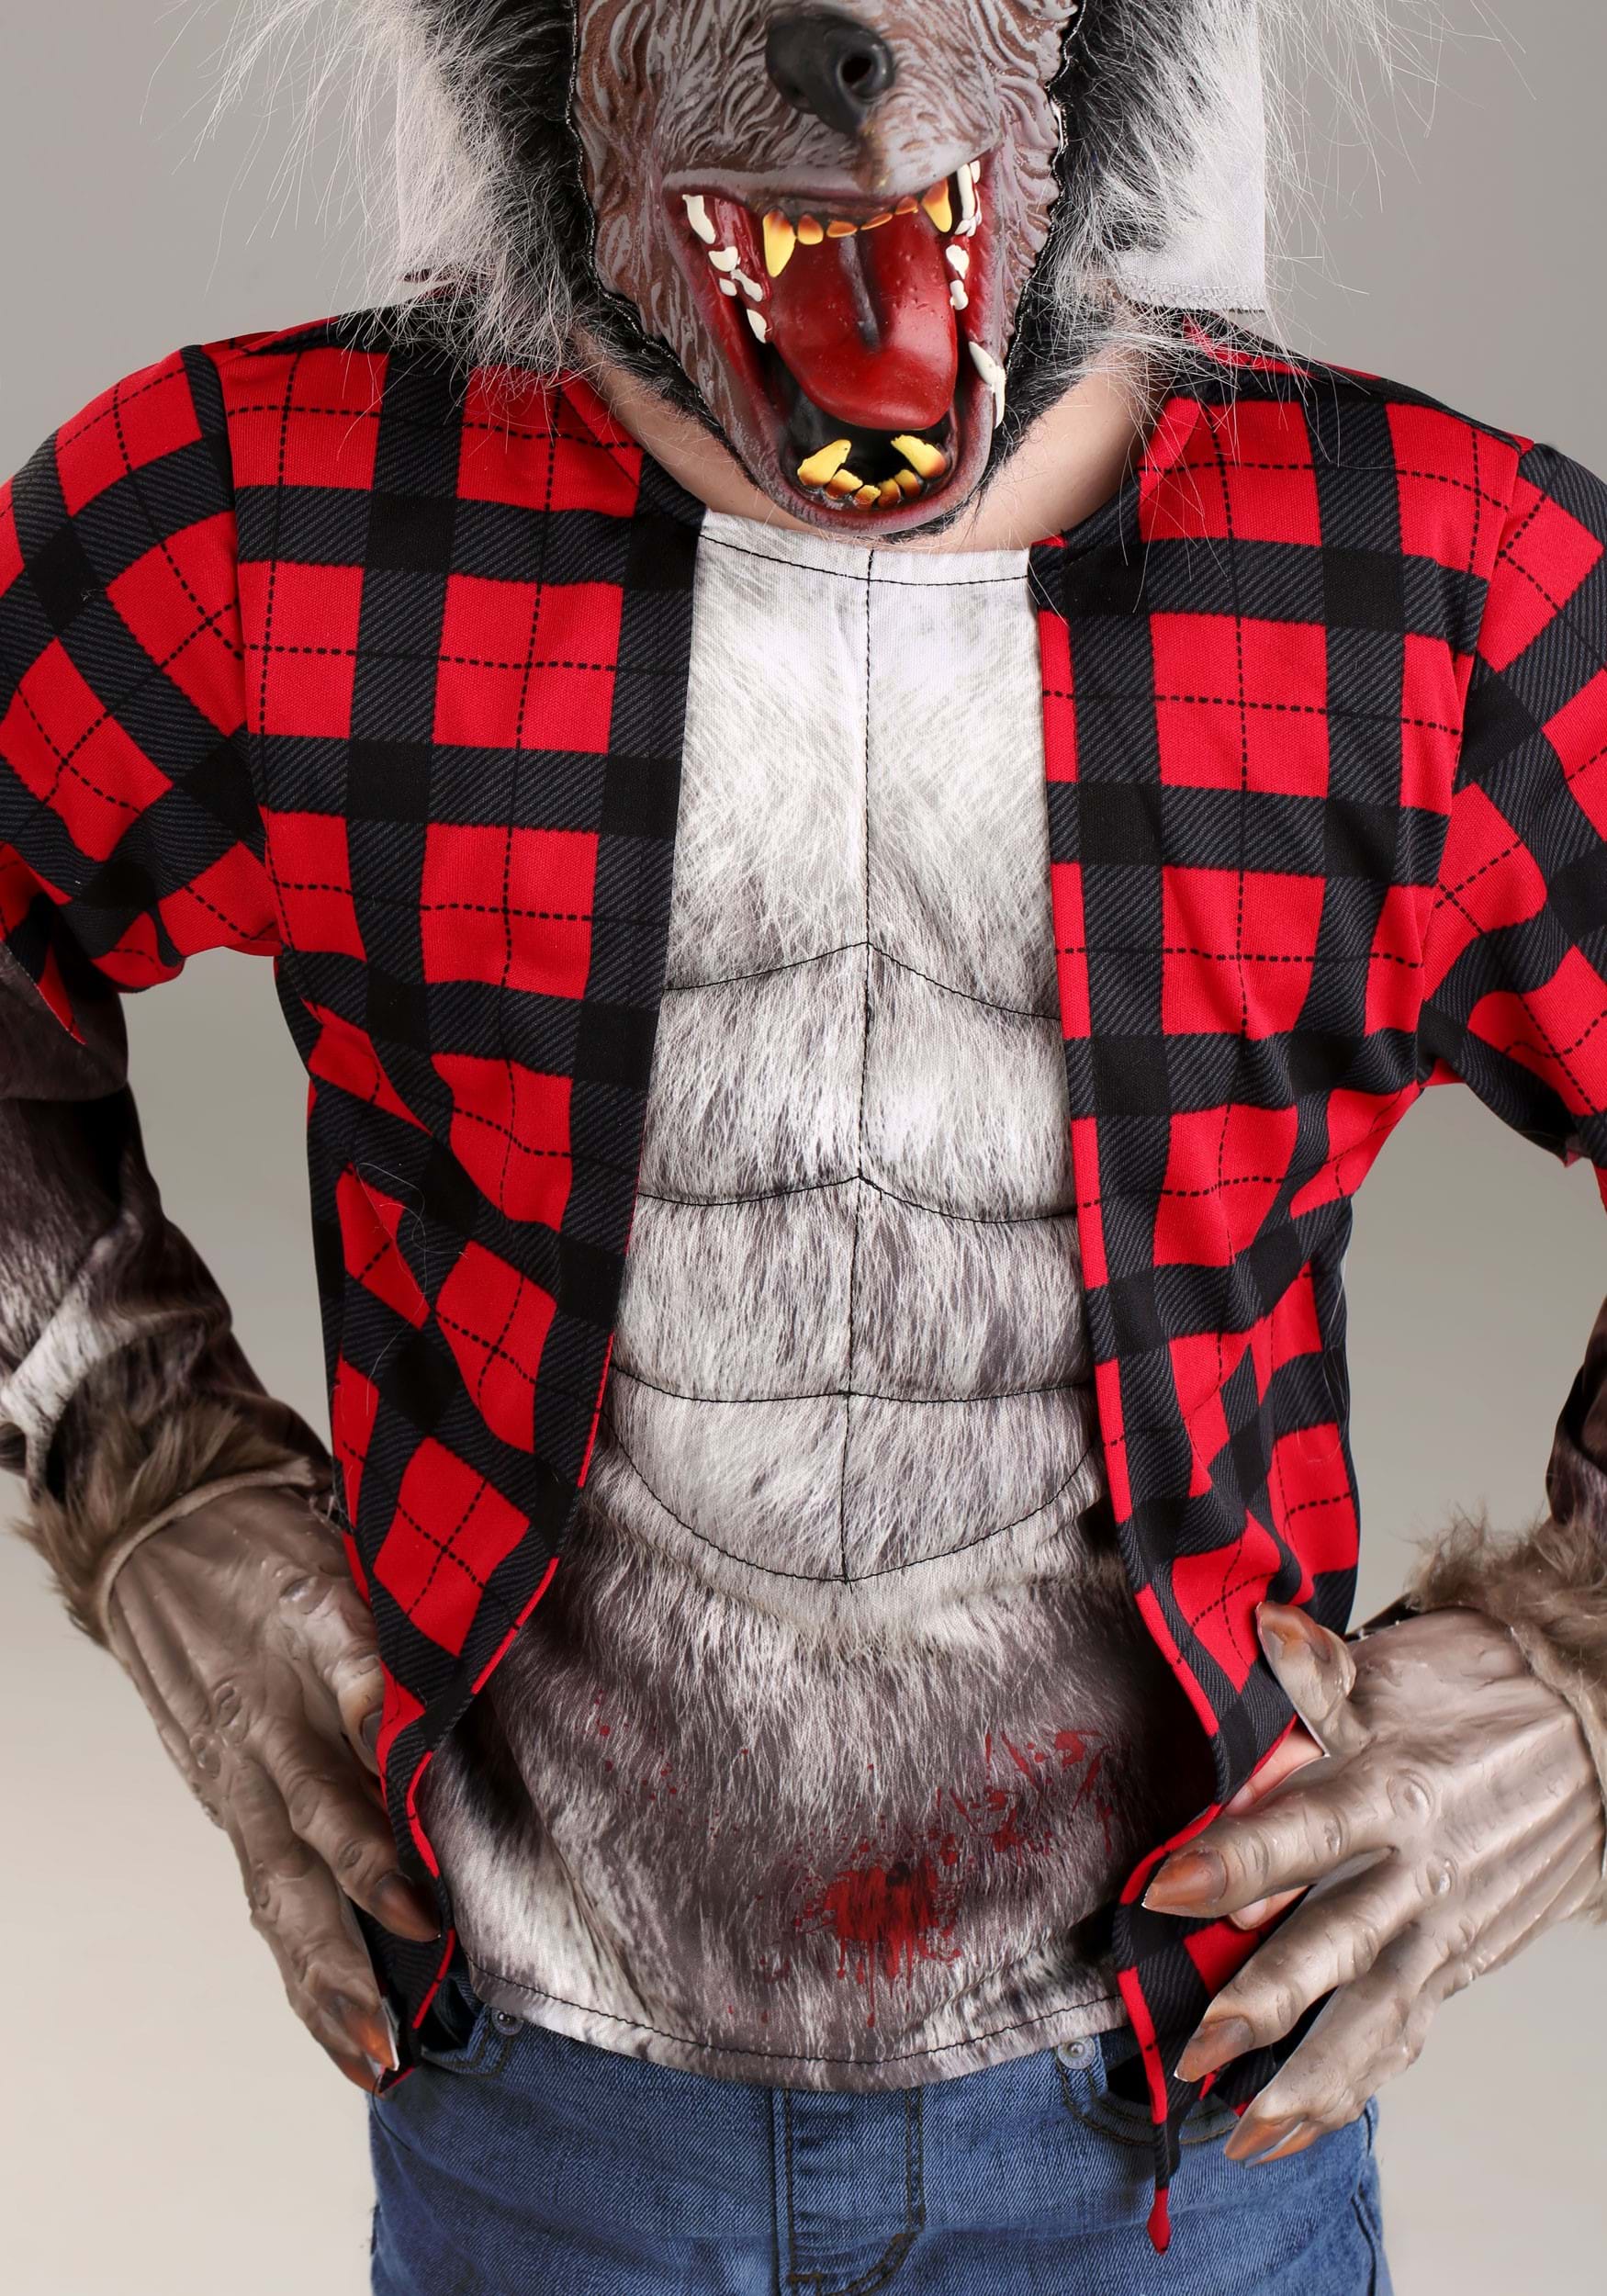 werewolf costume